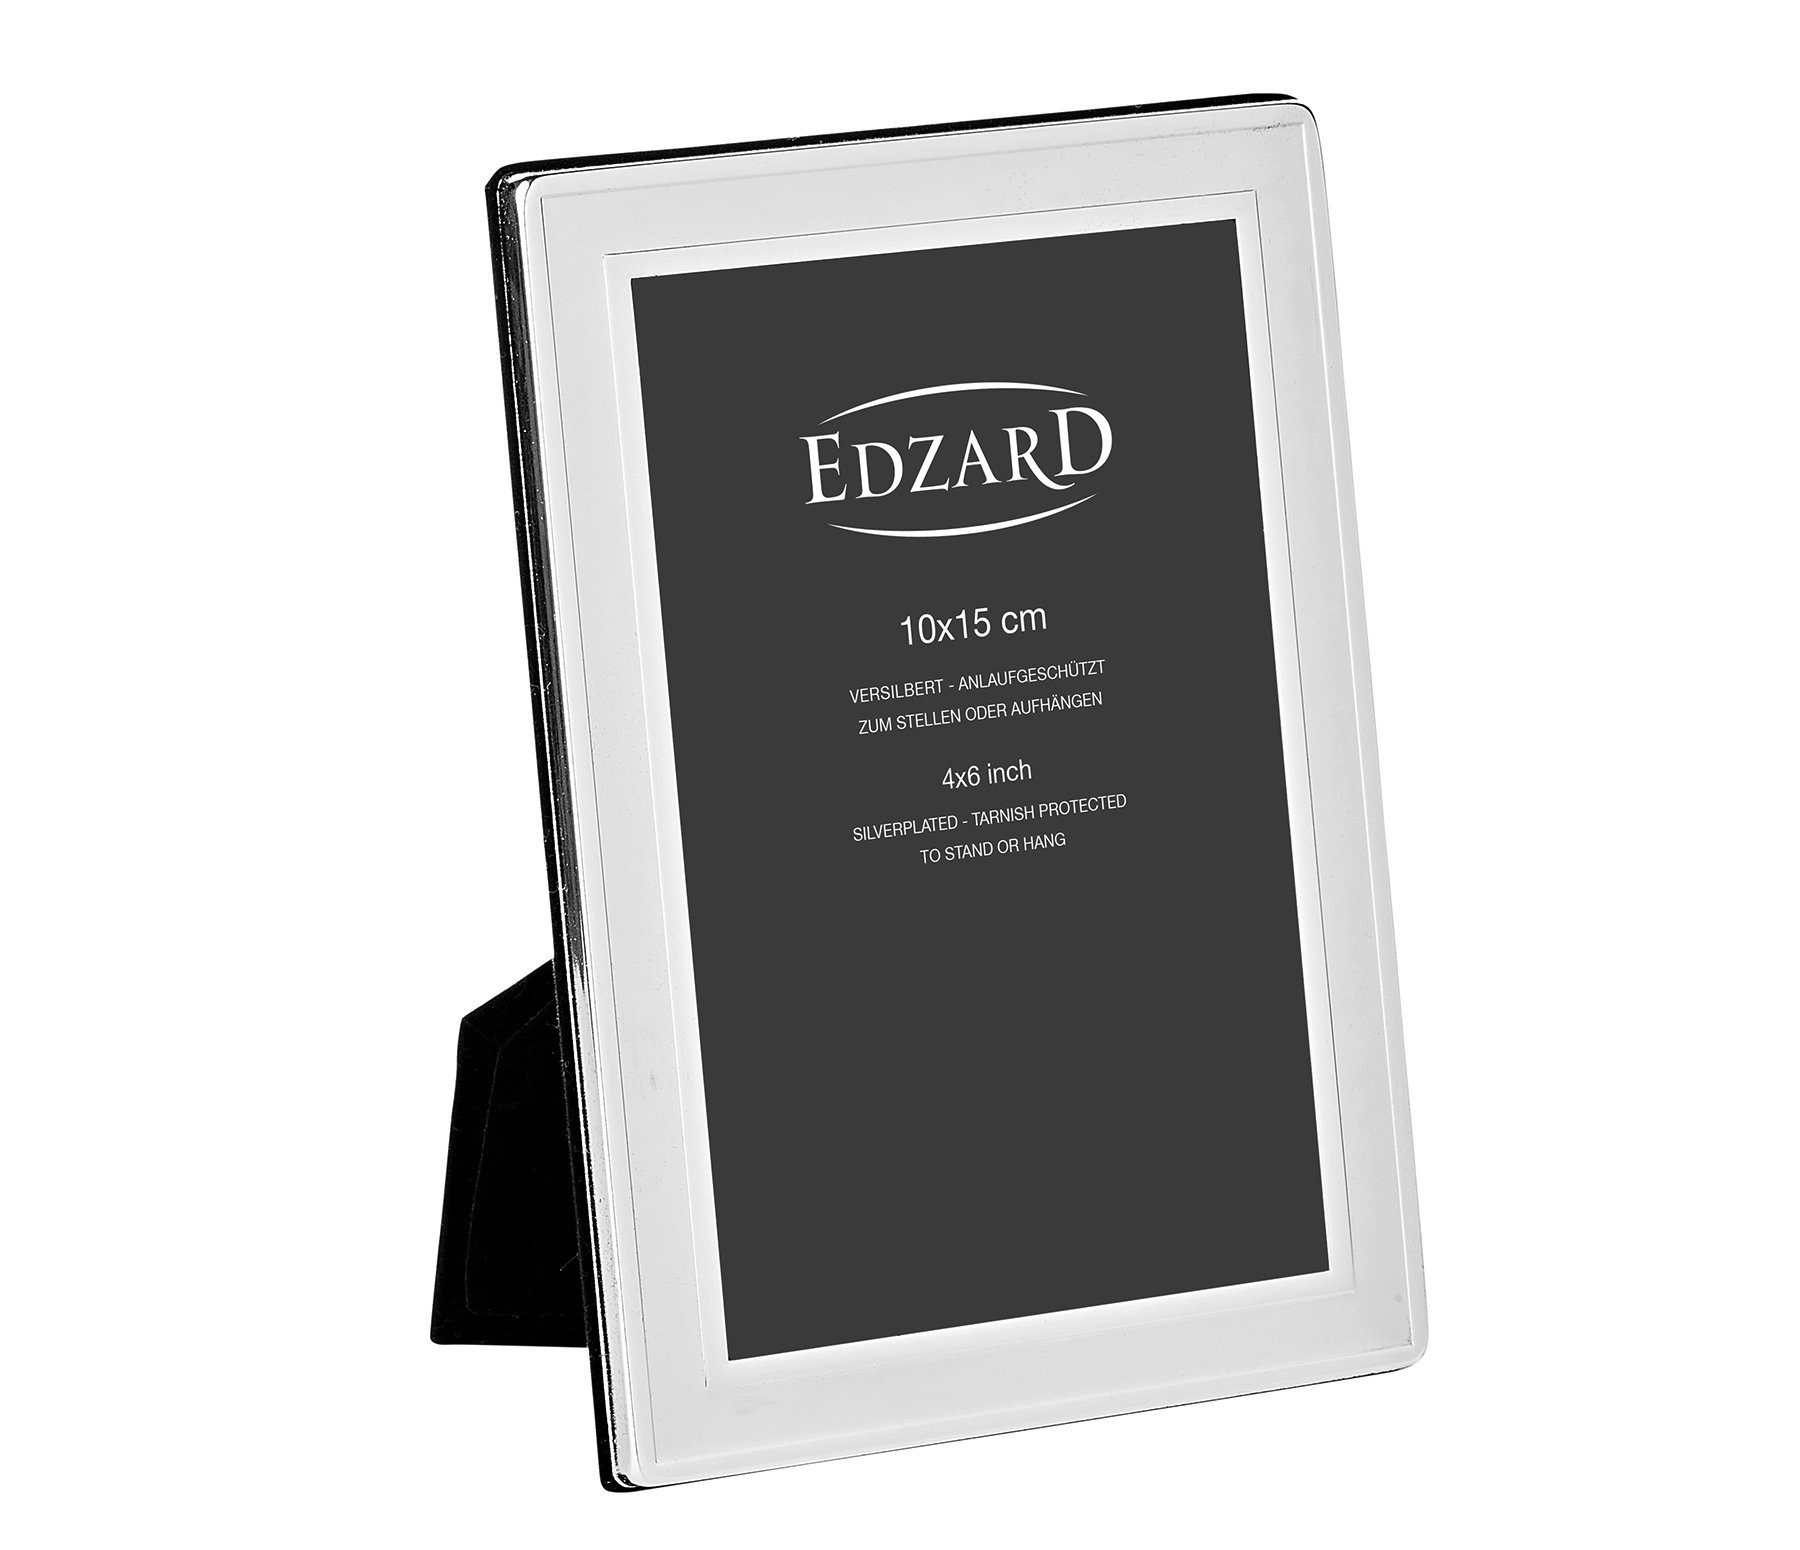 EDZARD Bilderrahmen Nardo, Foto für anlaufgeschützt, 10x15 cm und versilbert